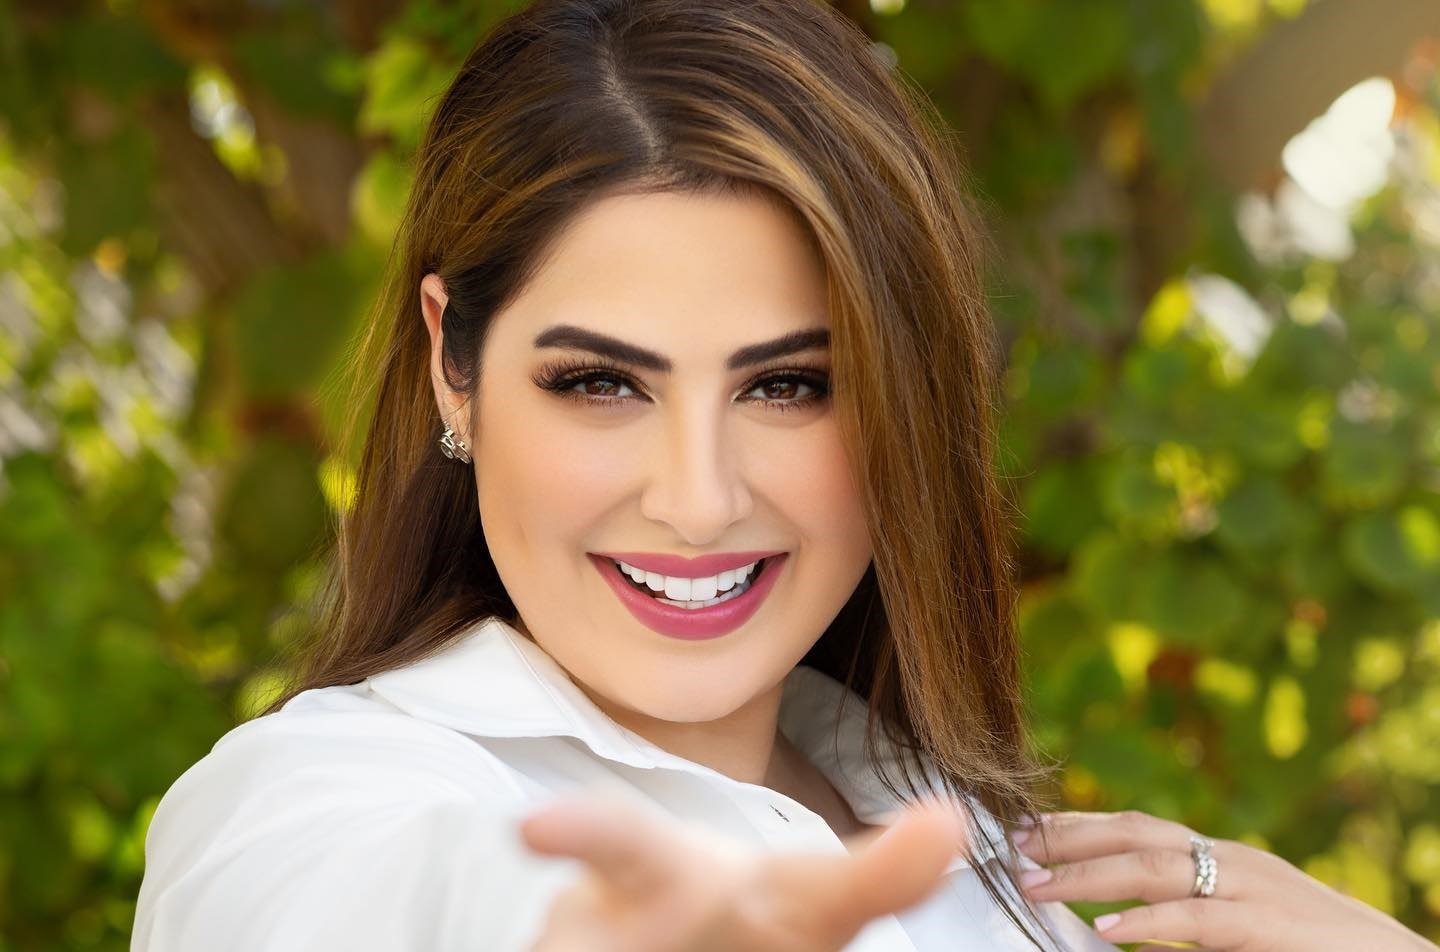 المورد  رؤى الصبان ممثلة ومذيعة إماراتية من أصل أردني اشتهرت 